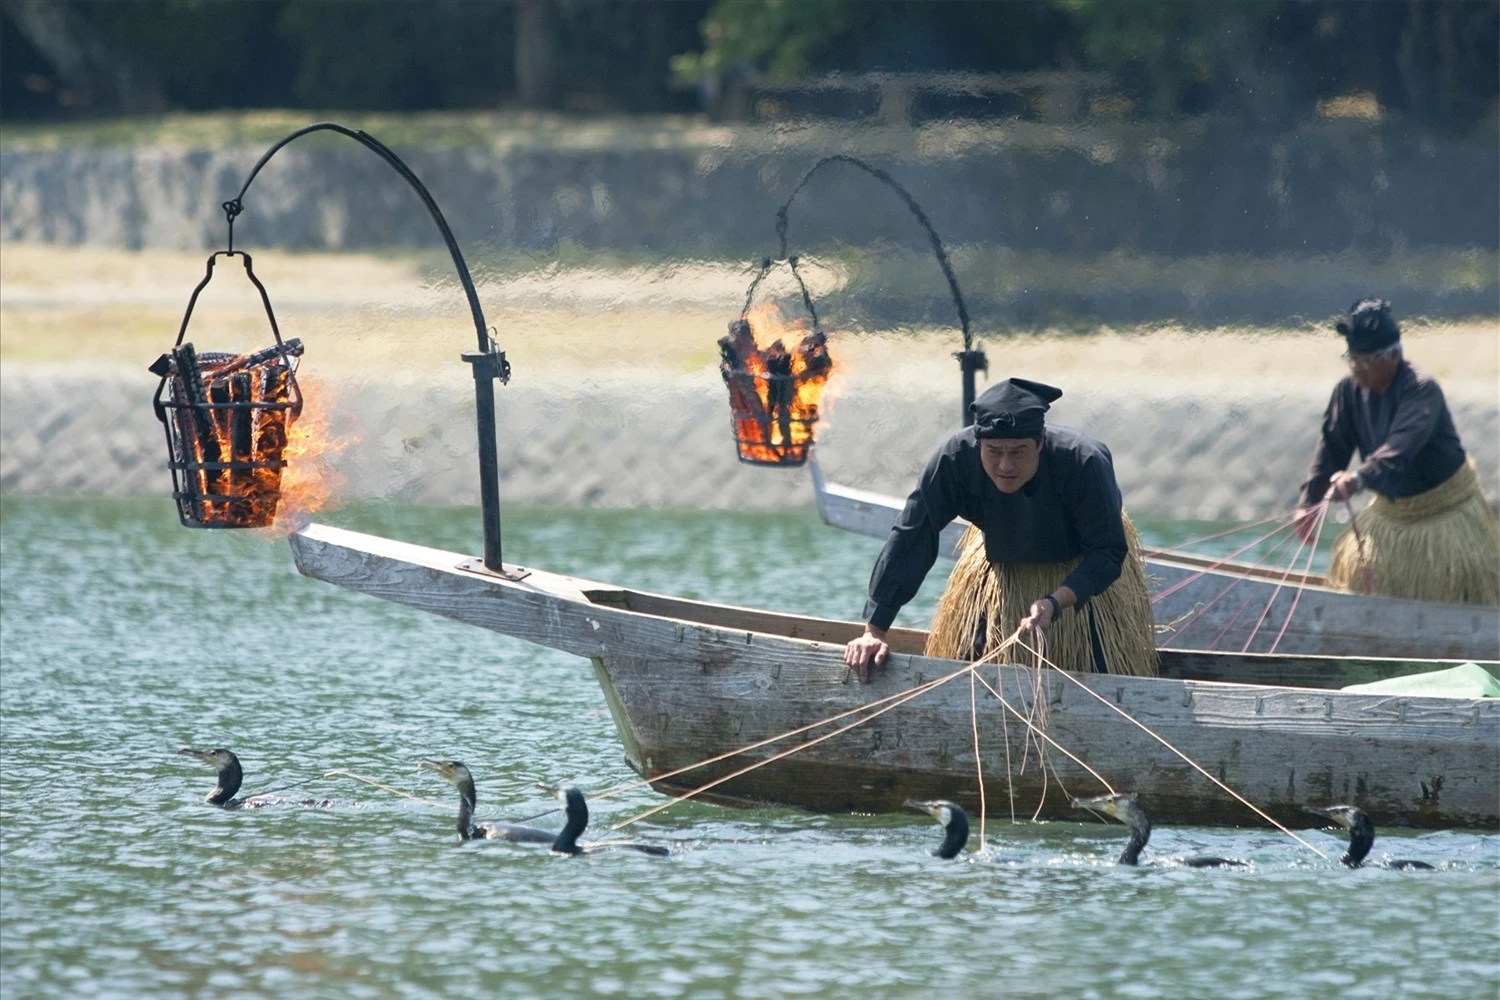 Ngư dân vùng sông Nagara (Nhật Bản) dùng chim cốc để đánh bắt cá